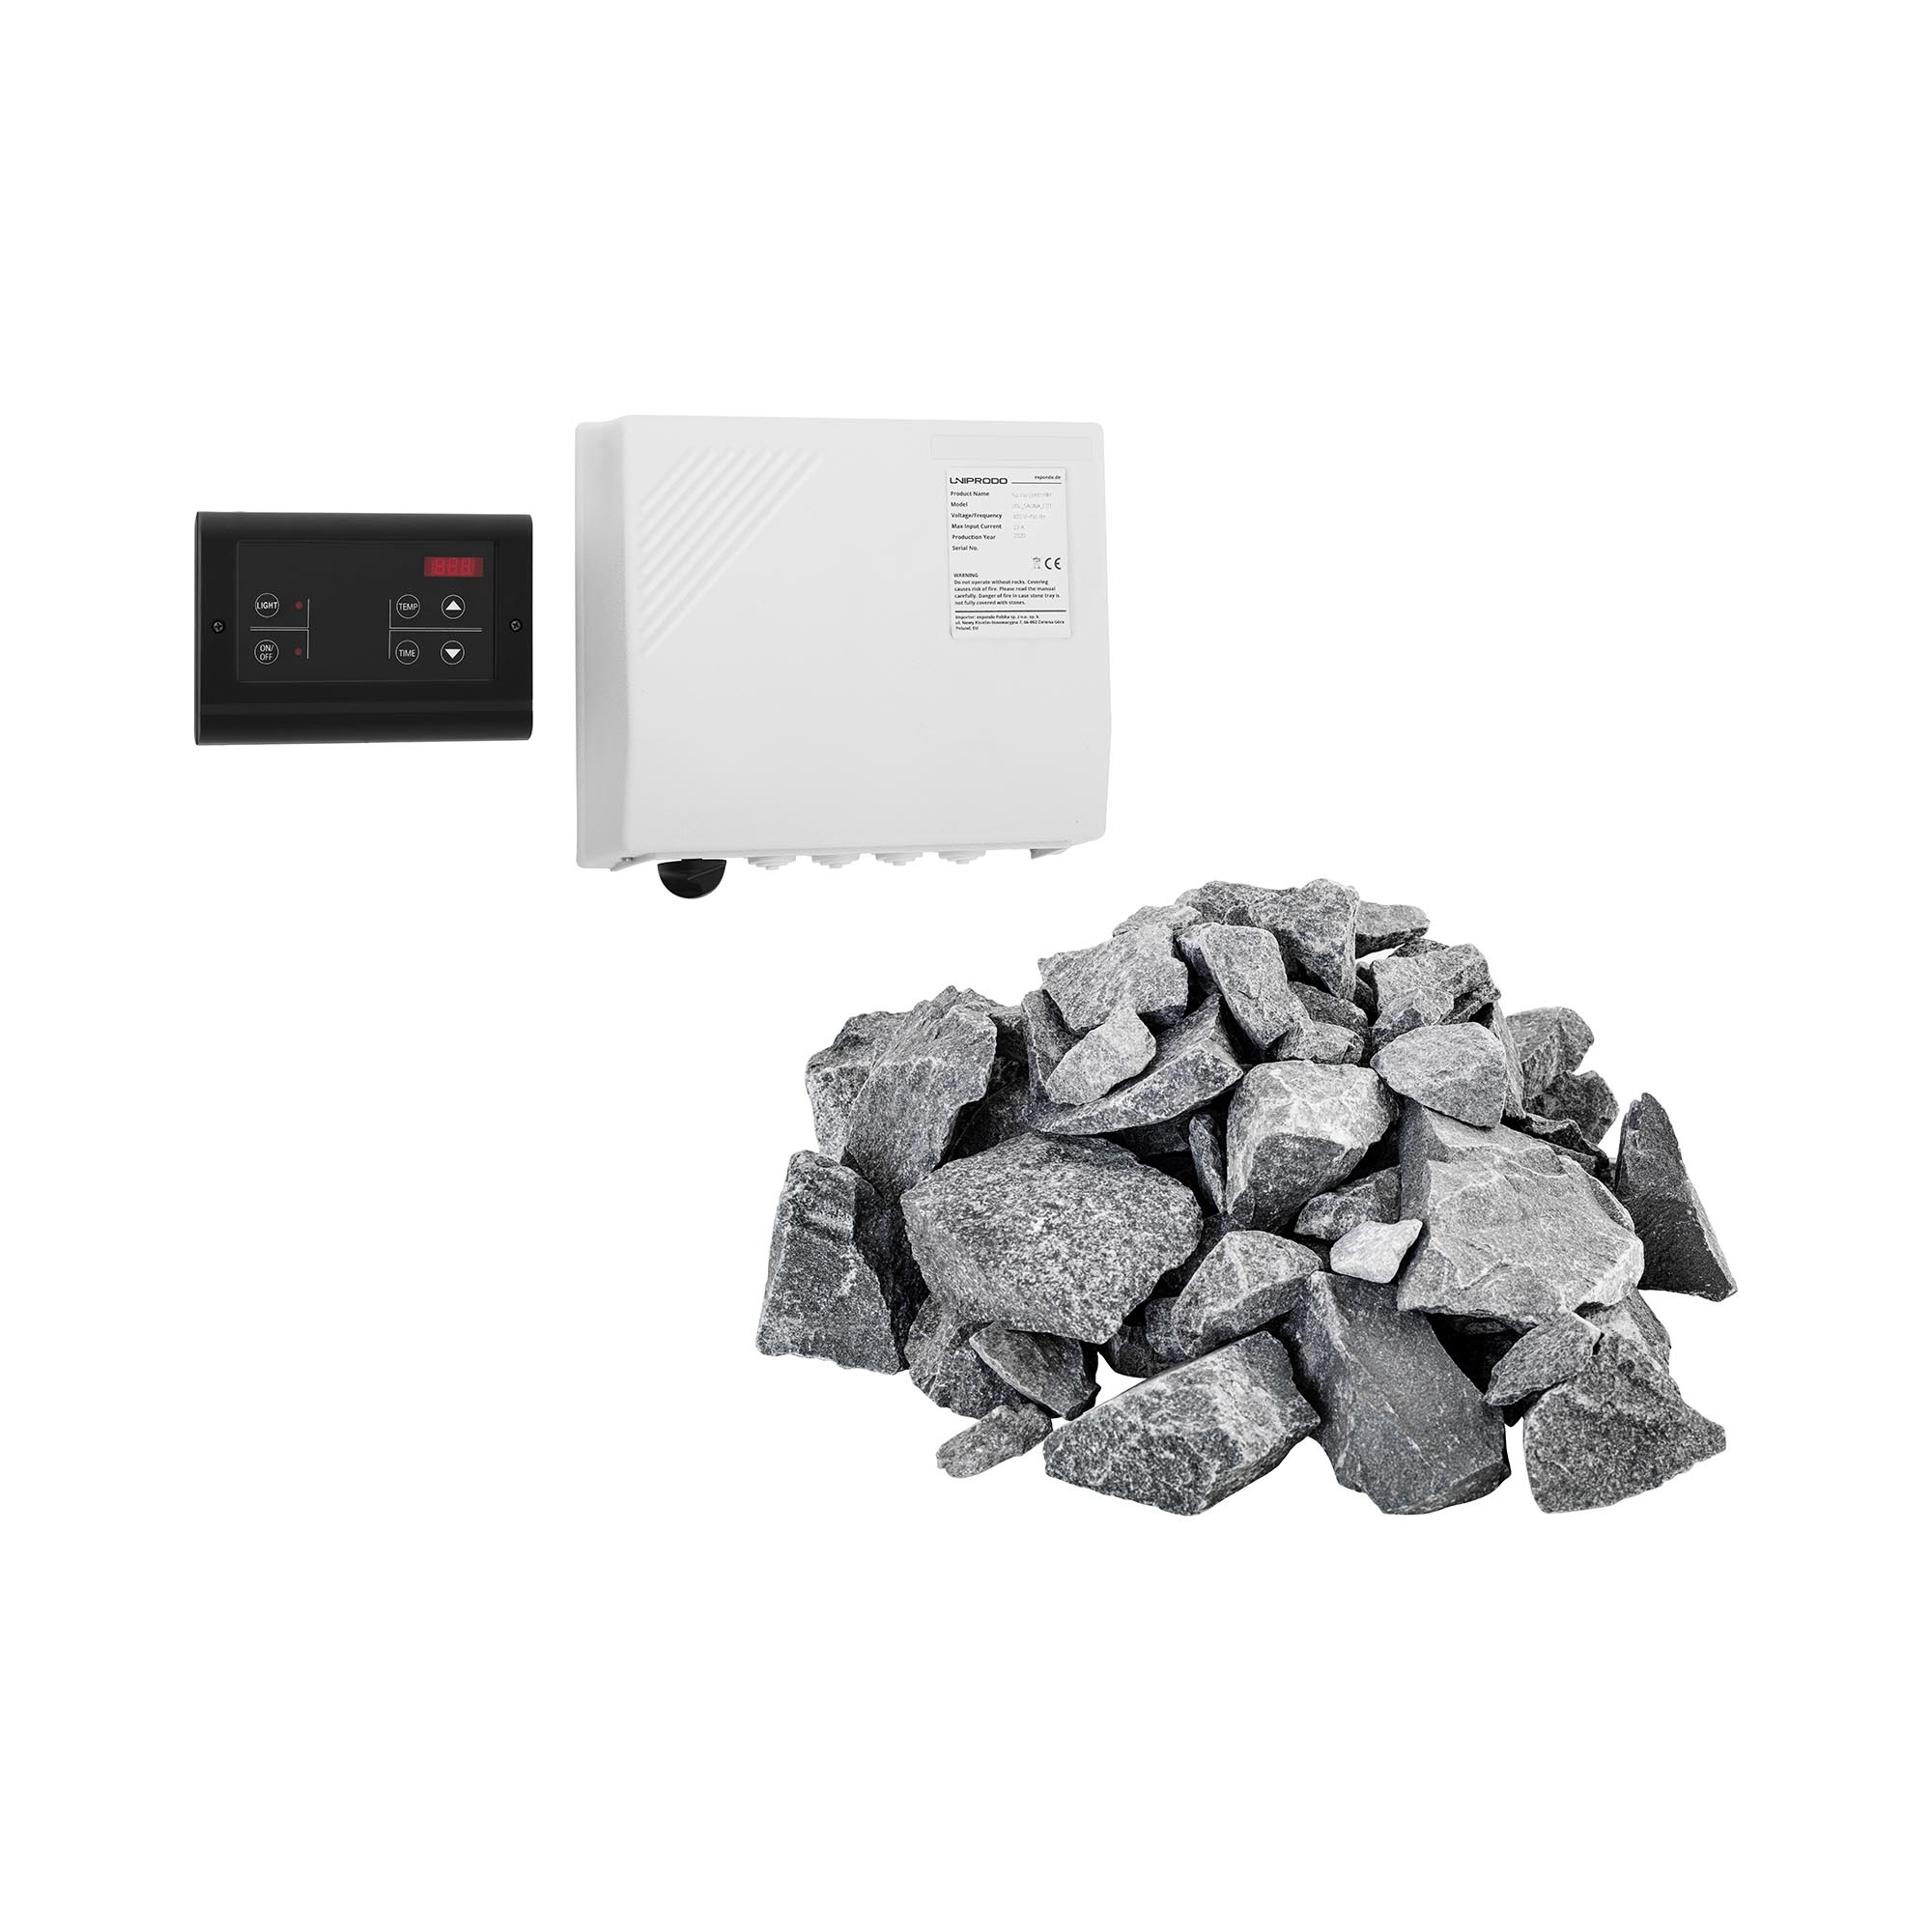 Sada řídící jednotky pro sauny se saunovými kameny - LED displej - 20 kg - pro saunová kamna Uniprod